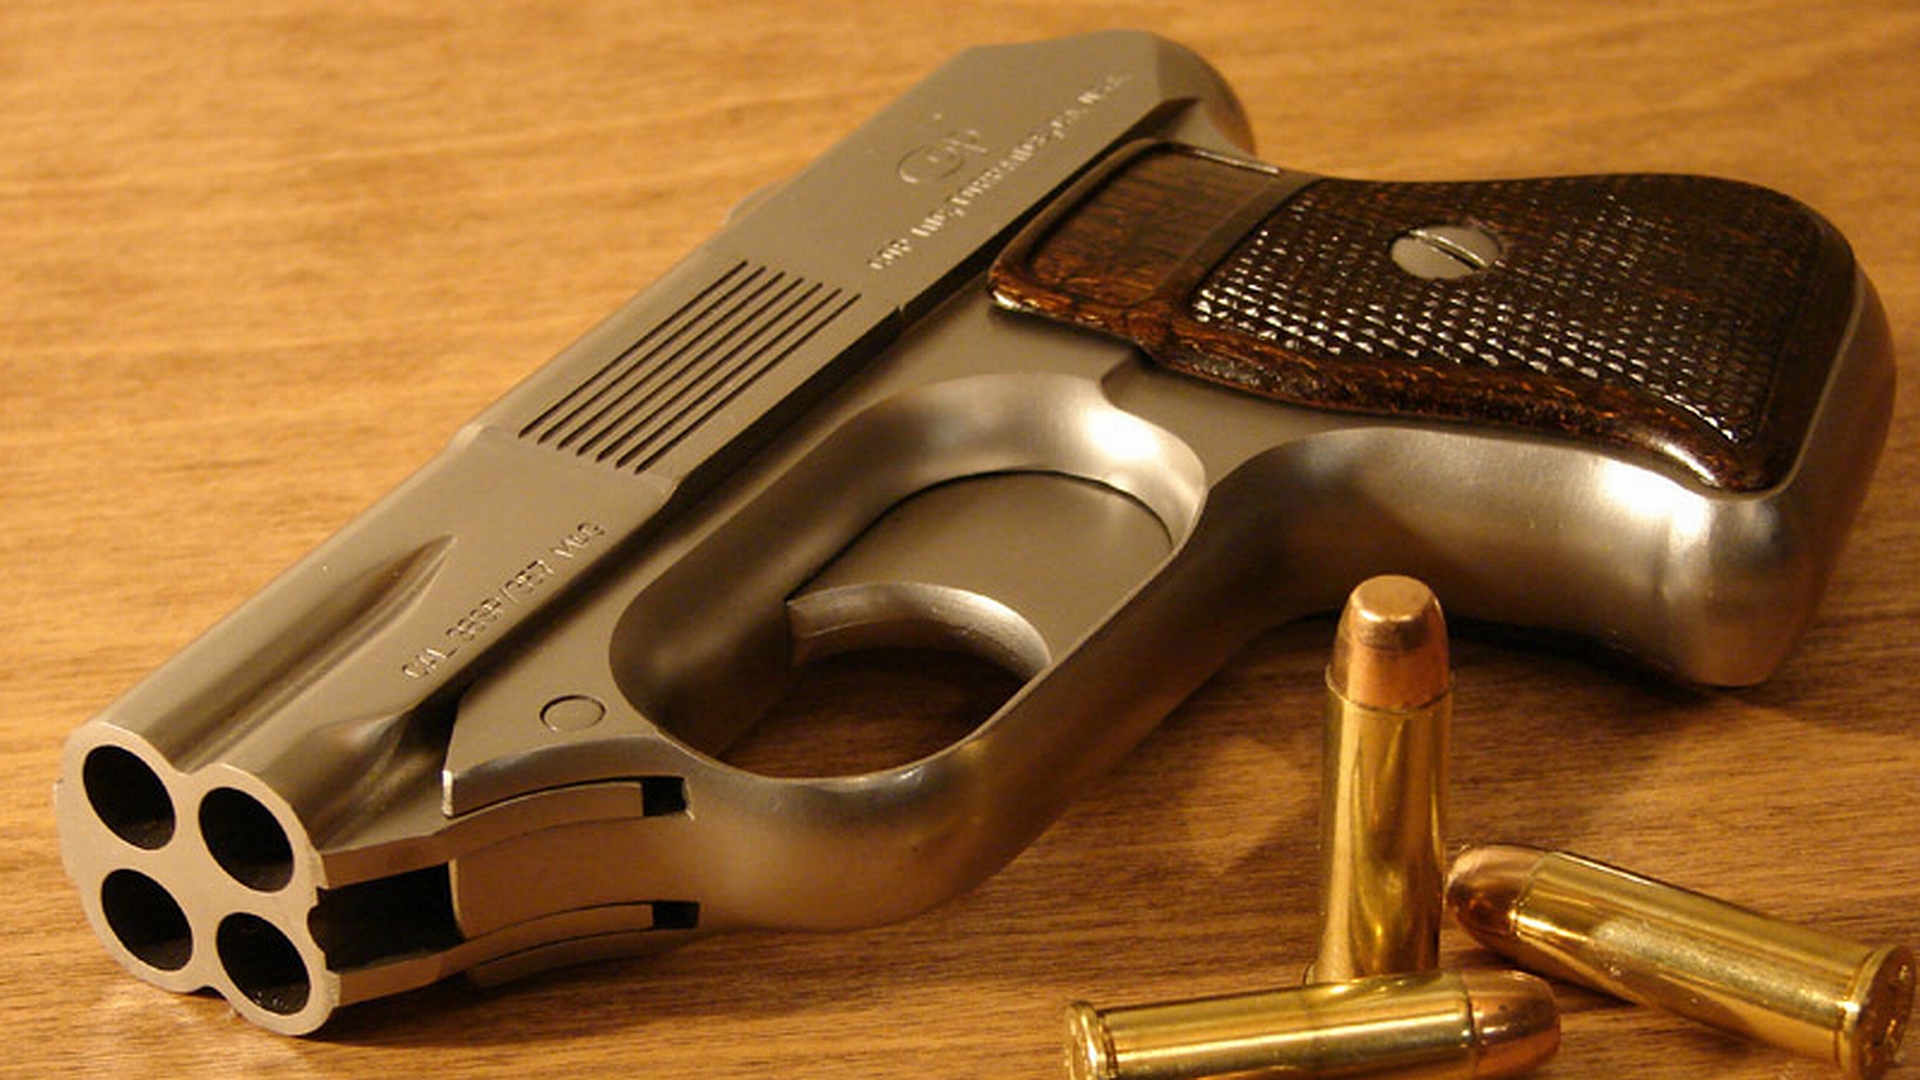 Скачать обои Пистолет Cop 357 Derringer на телефон бесплатно